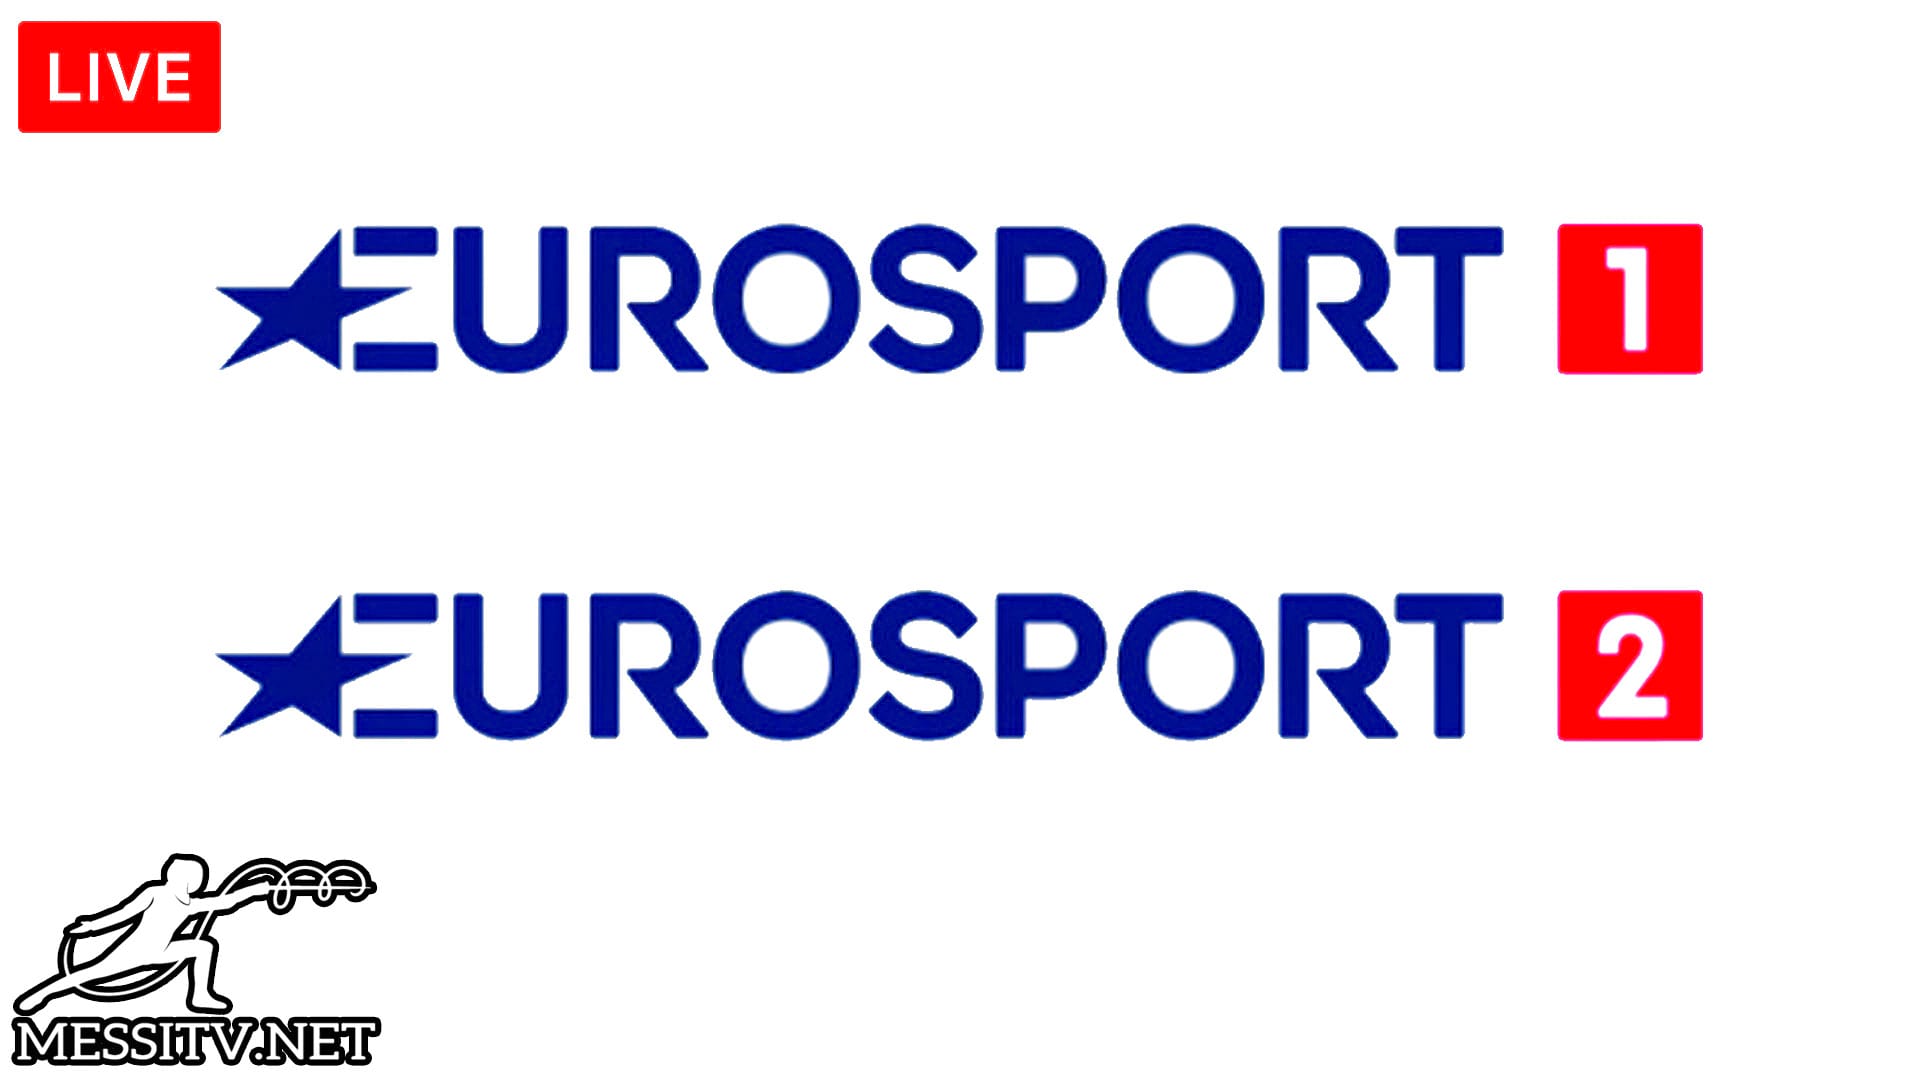 Eurosport 1 HD uk, Eurosport 2 HD France, Eurosport 1 france, Eurosport 2 UK, Eurosport 1 Deutschland, Eurosport 2 HD Extra Deutschland, Eurosport 1 Polska, Eurosport 2 Polska, Eurosport 1 Italia, Eurosport 2 Italia,